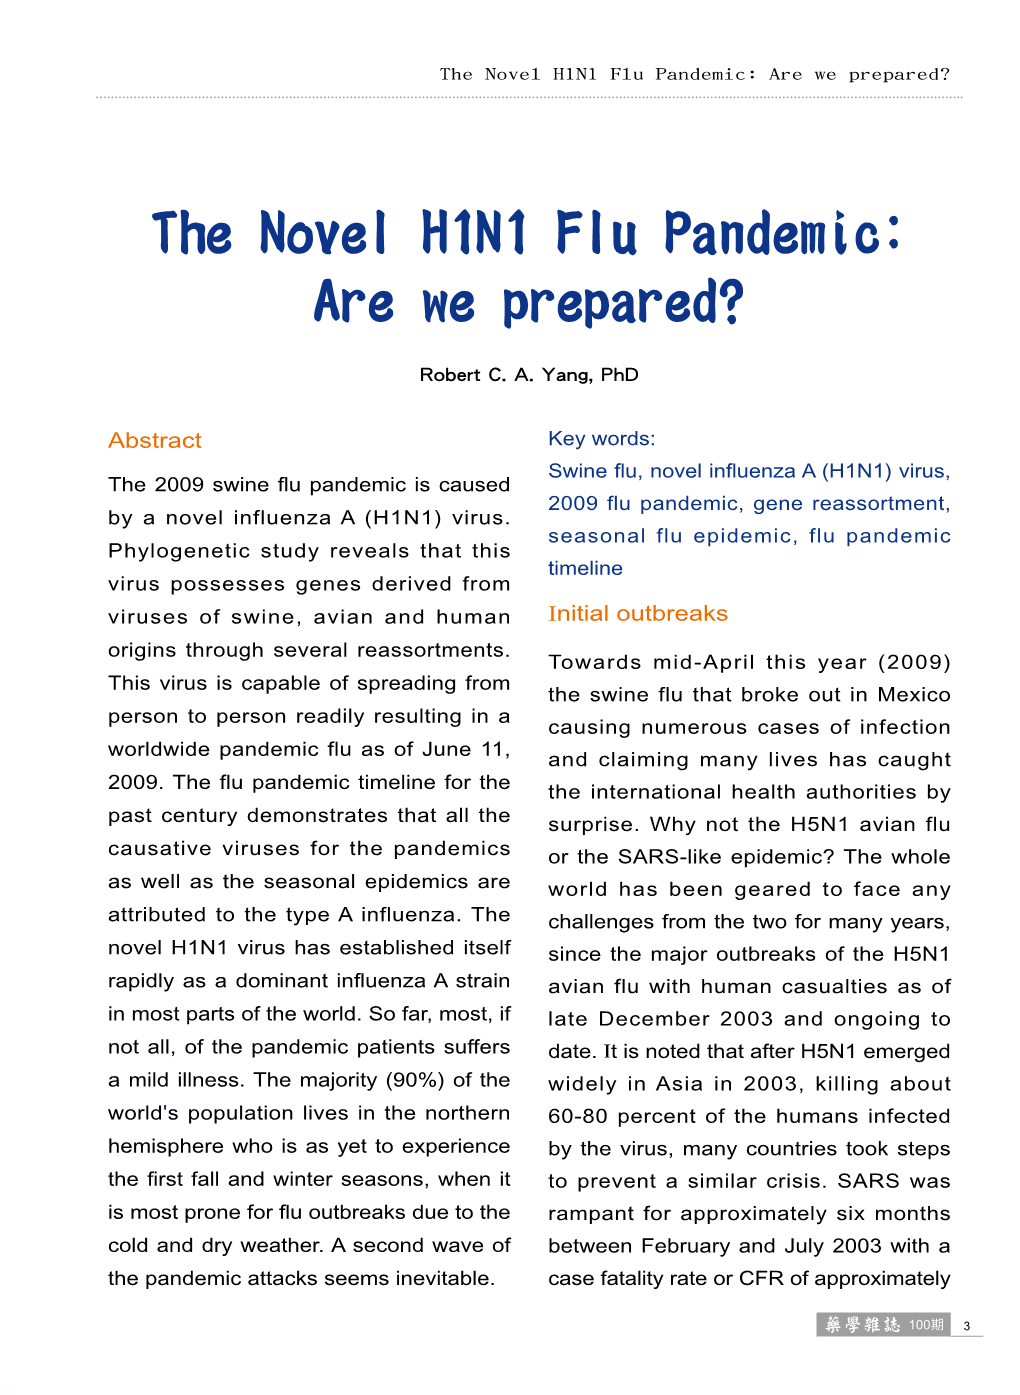 The Novel H1N1 Flu Pandemic: Are We Prepared?